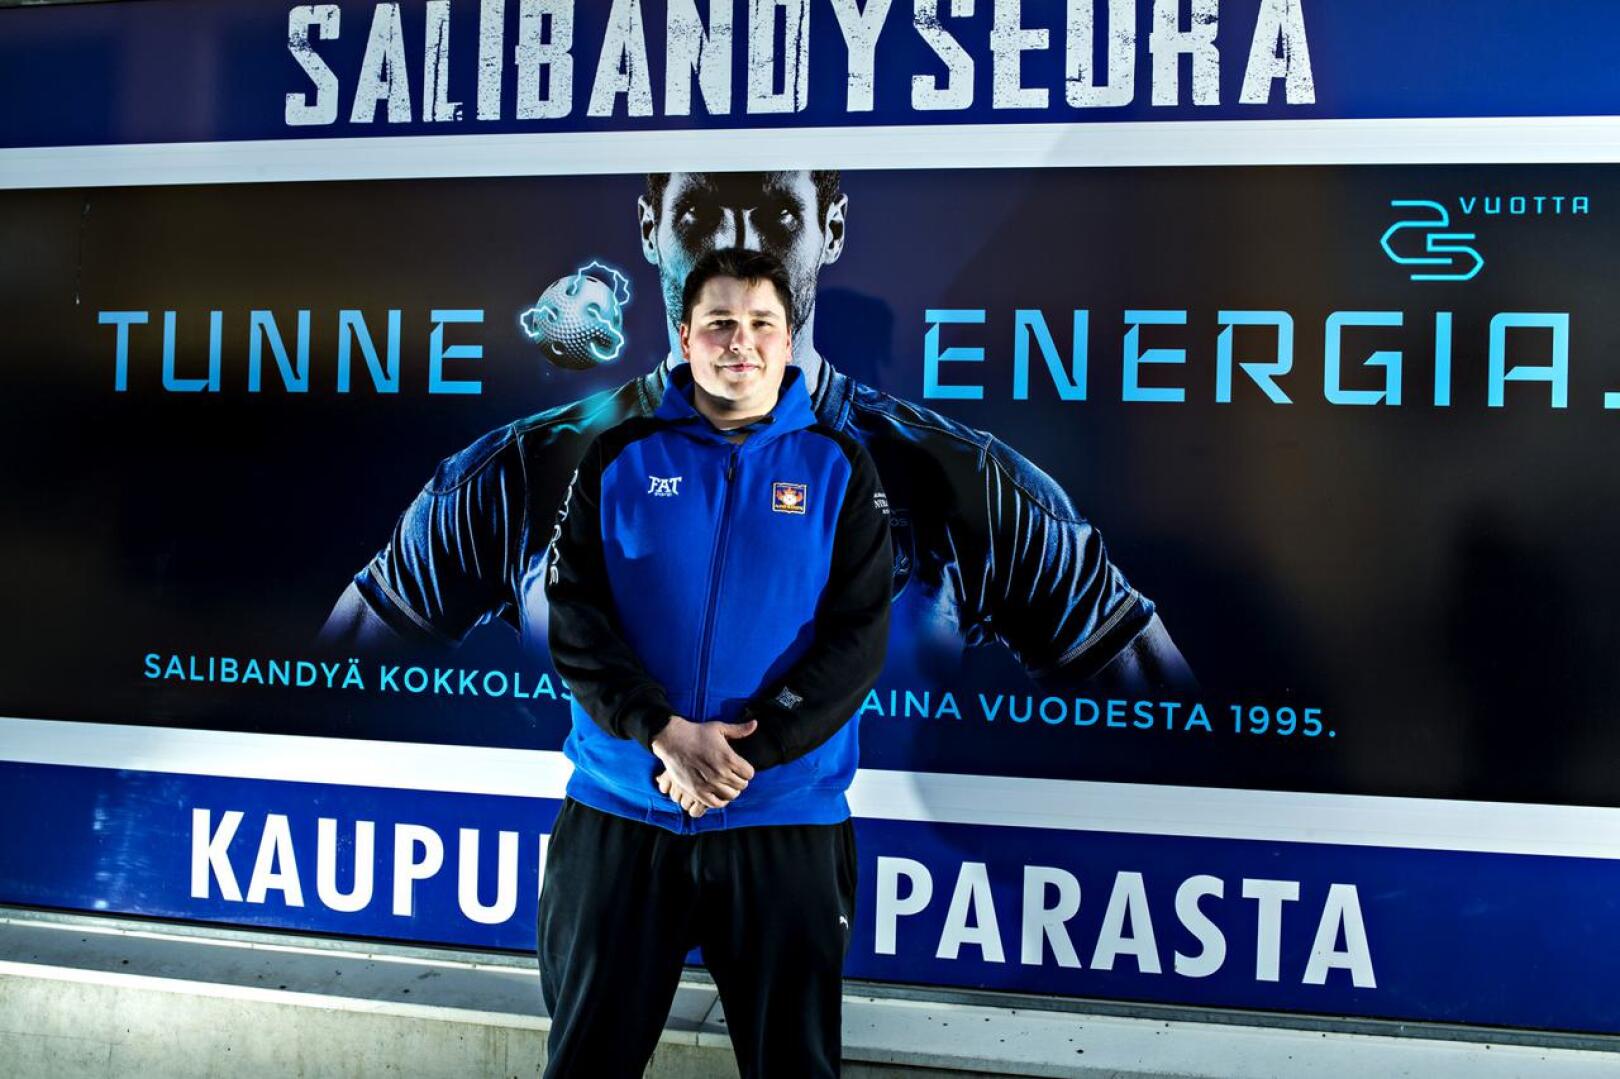 Jani Ollikaisen valmentama Nibacos on aloittanut Suomisarjan hyvin. Kolmen ottelun jälkeen taskussa on kolme voittoa ja yhdeksan sarjapistettä.